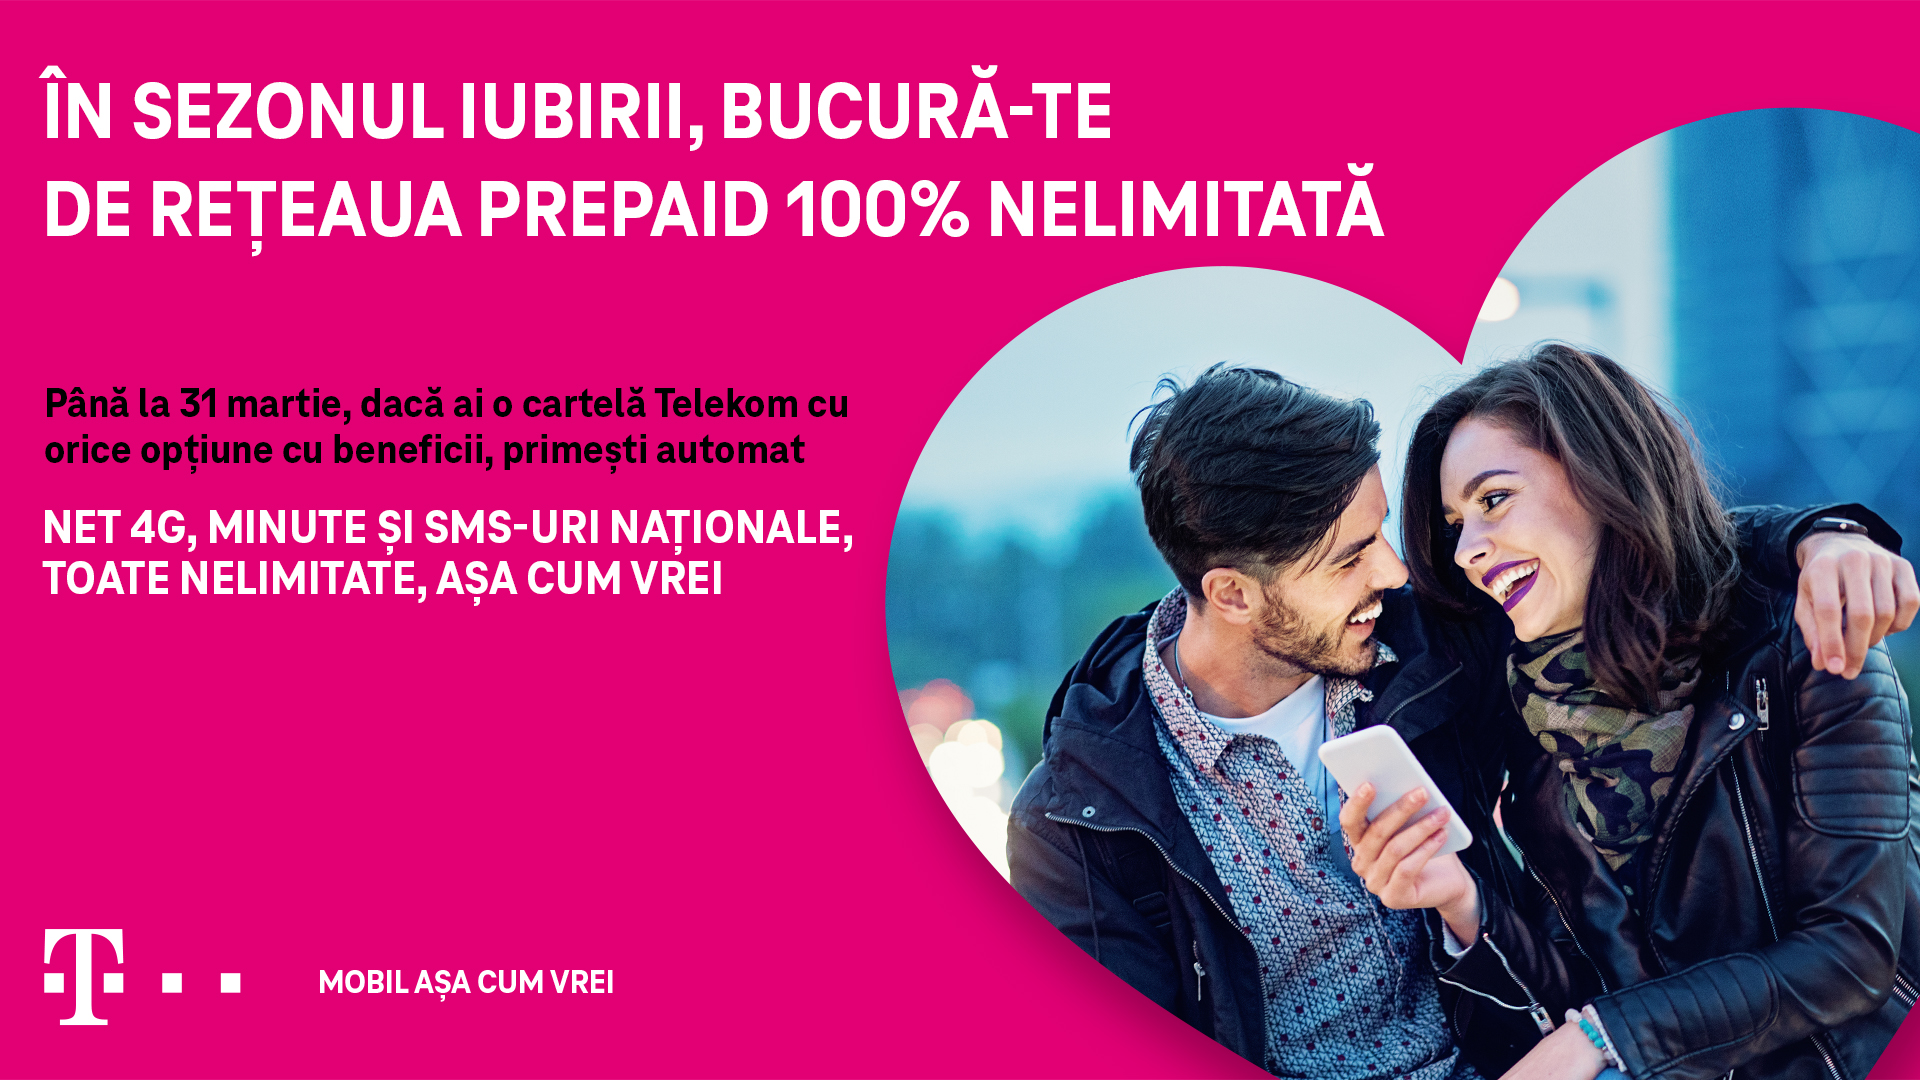 Rețeaua Telekom devine nelimitată pentru utilizatorii de cartele prepaid